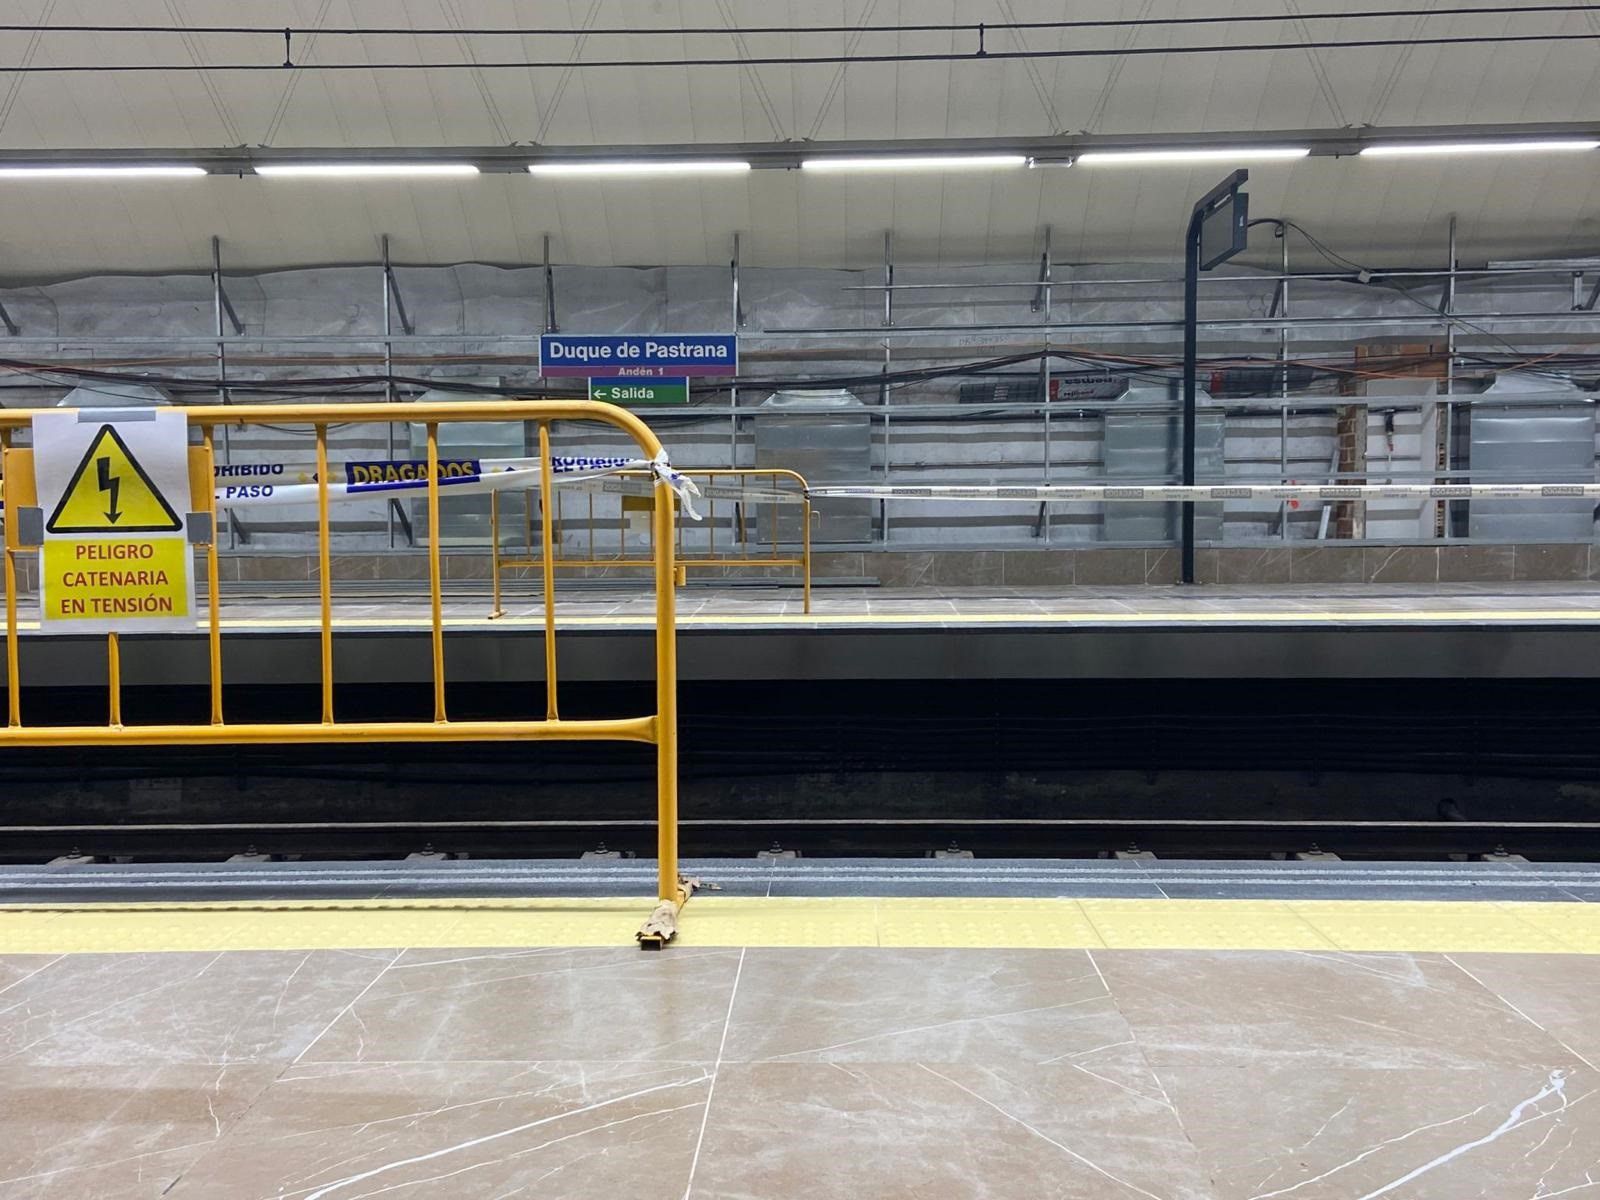 31-08-2021 Obras de mejora en la estación de Metro de Duque de Pastrana. Las obras continuarán hasta final de año pero serán compatibles con la prestación del servicio POLITICA 